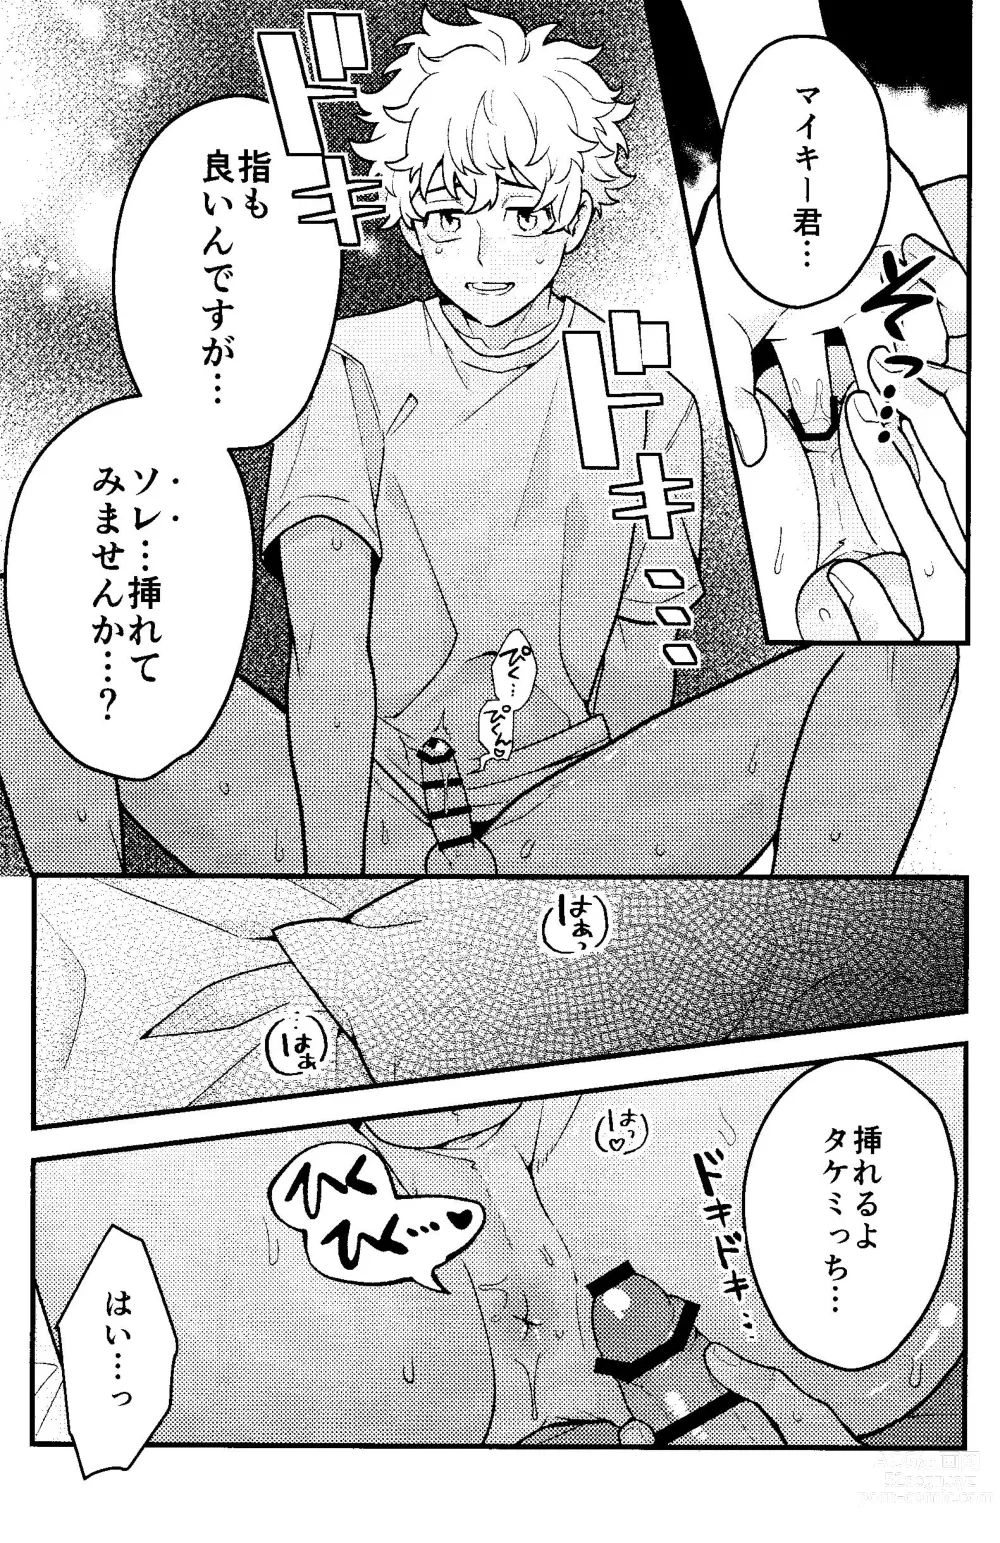 Page 16 of doujinshi Jitsuwa kaihatsu sumidesu